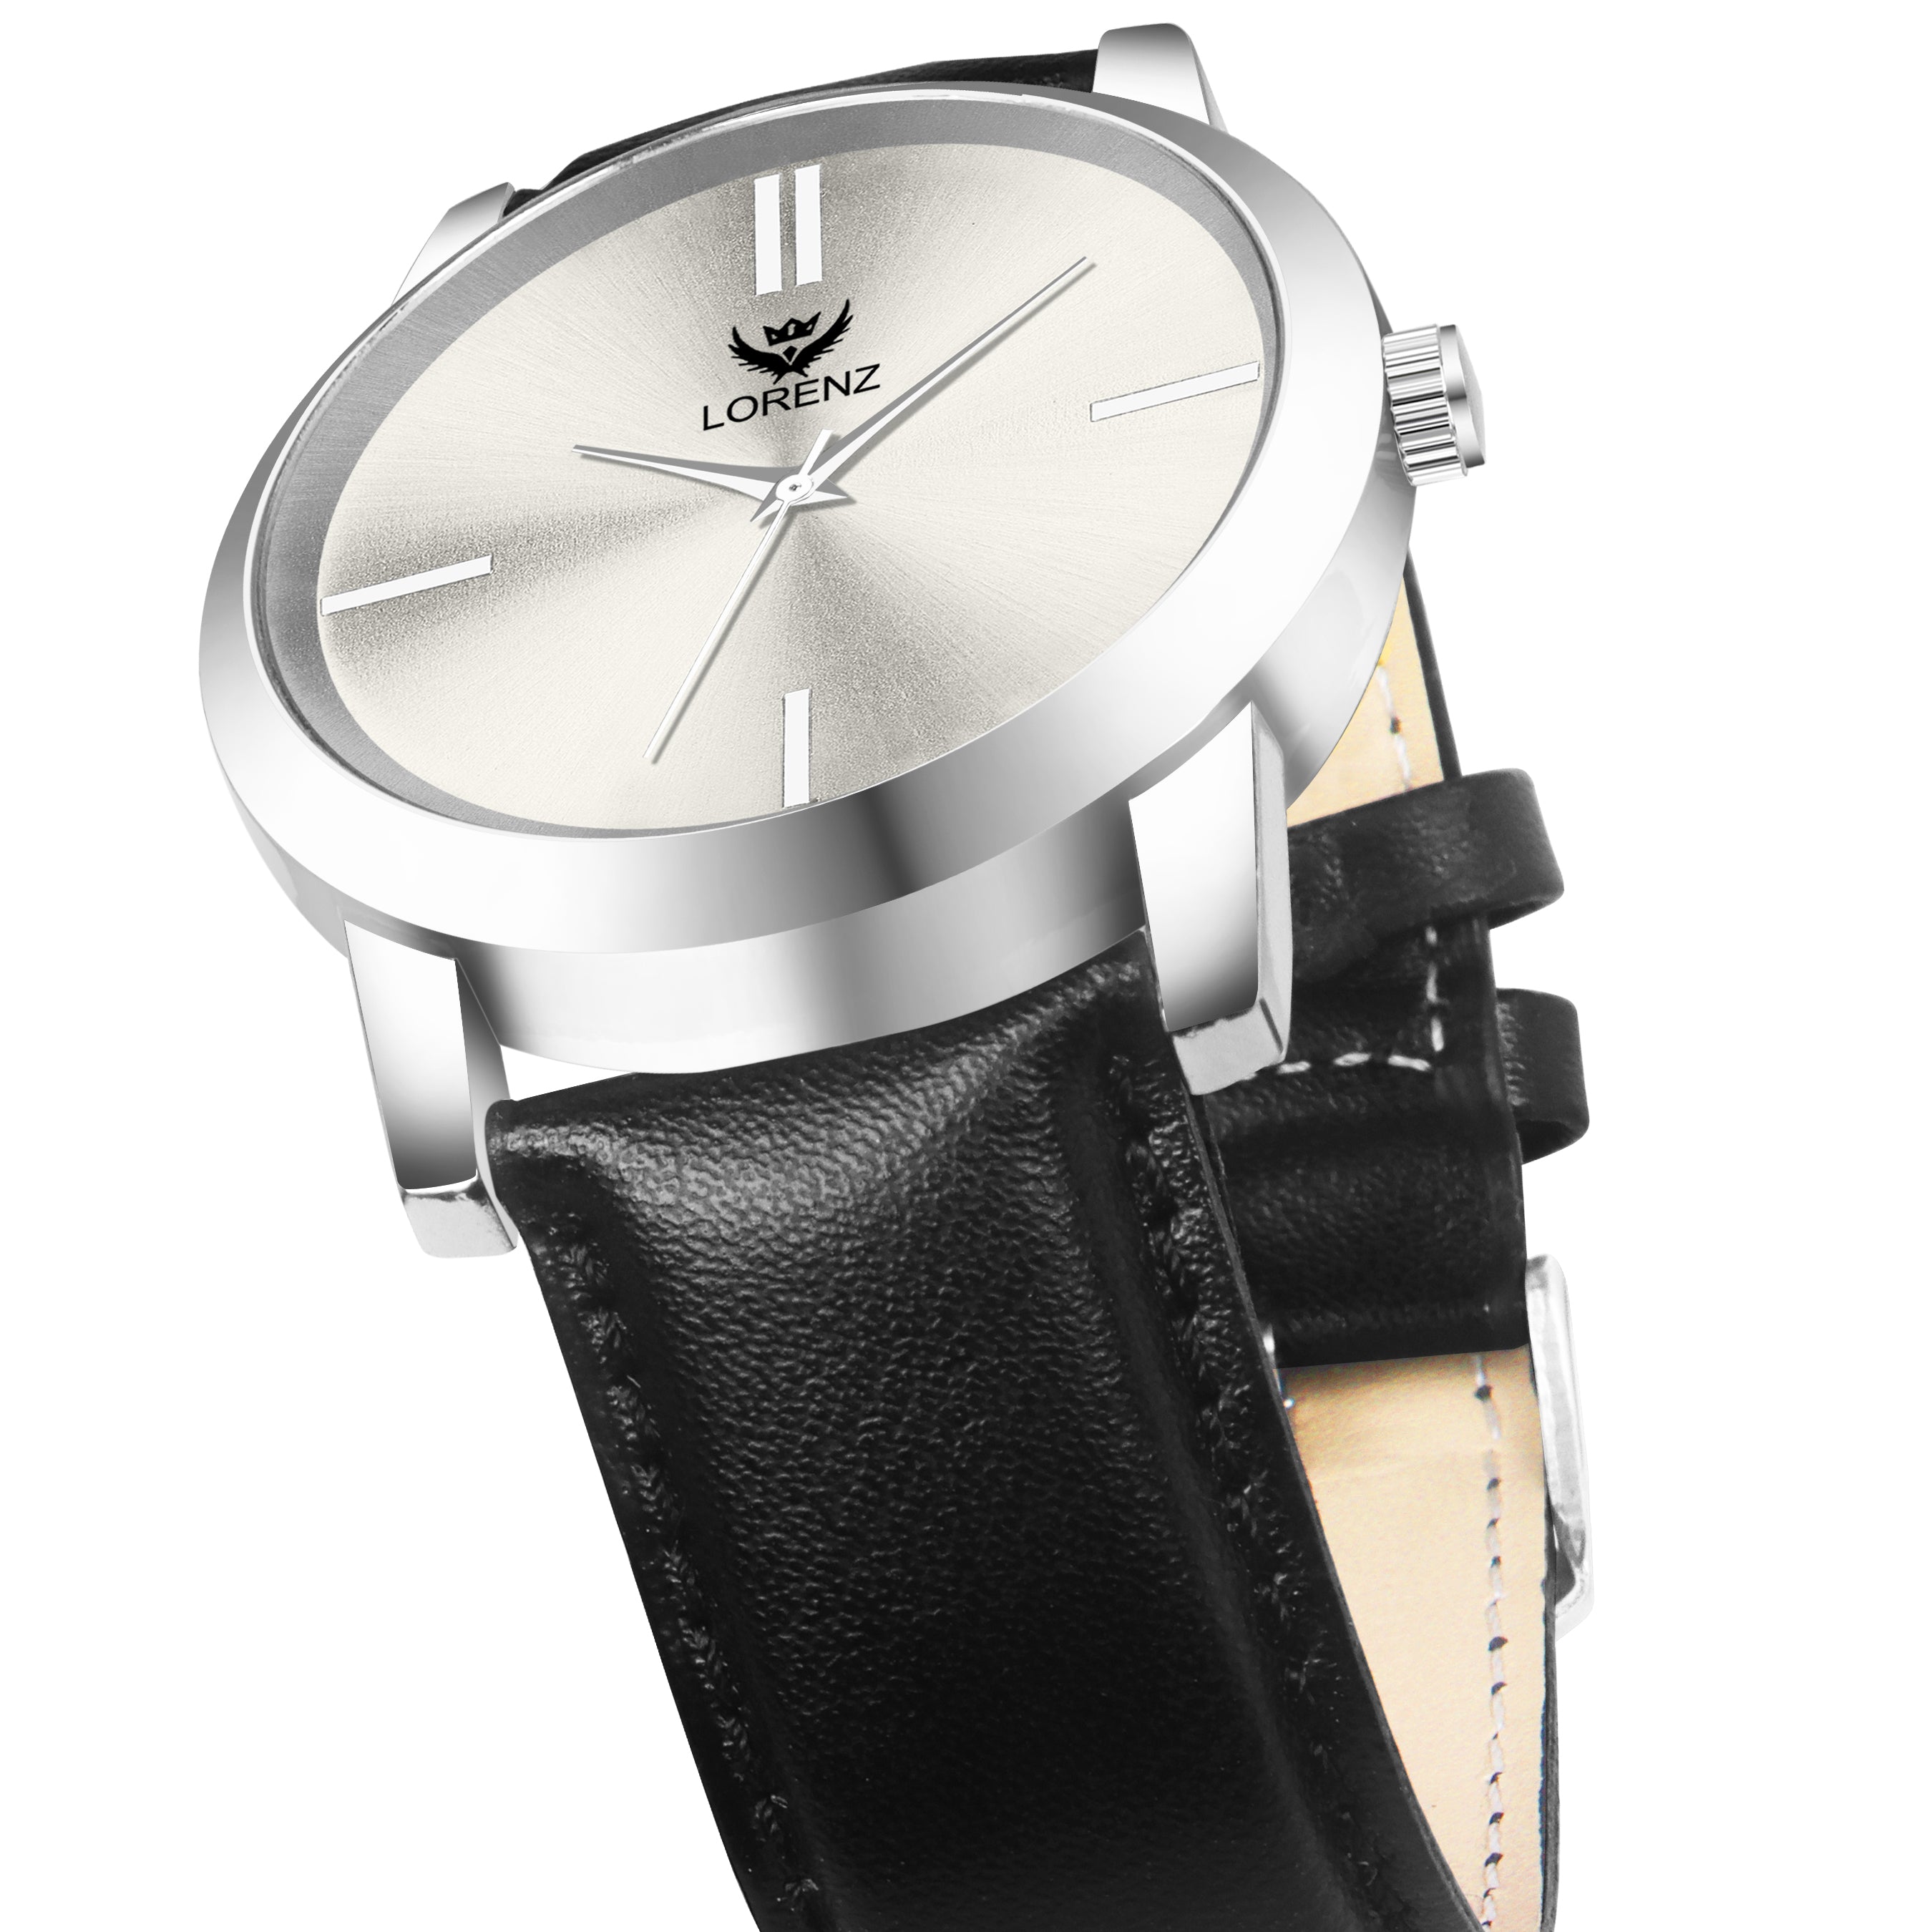 Lorenz Analogue Silver Dial Men's Watch -MK-4037R - Lorenz Fashion